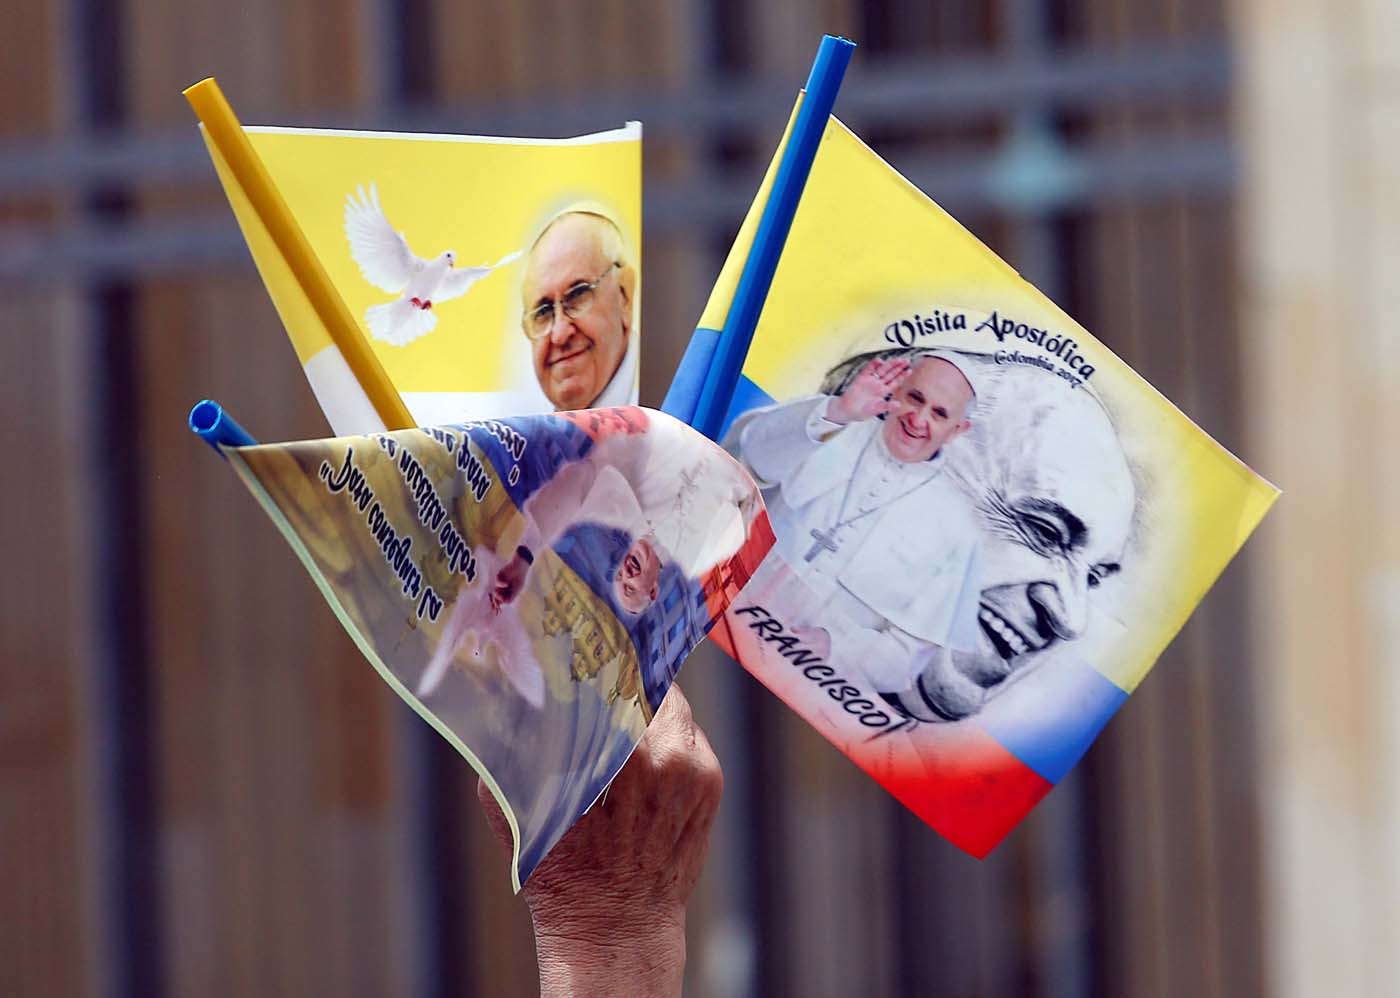 El papa Francisco en Colombia, visita “non grata” para ultracatólicos